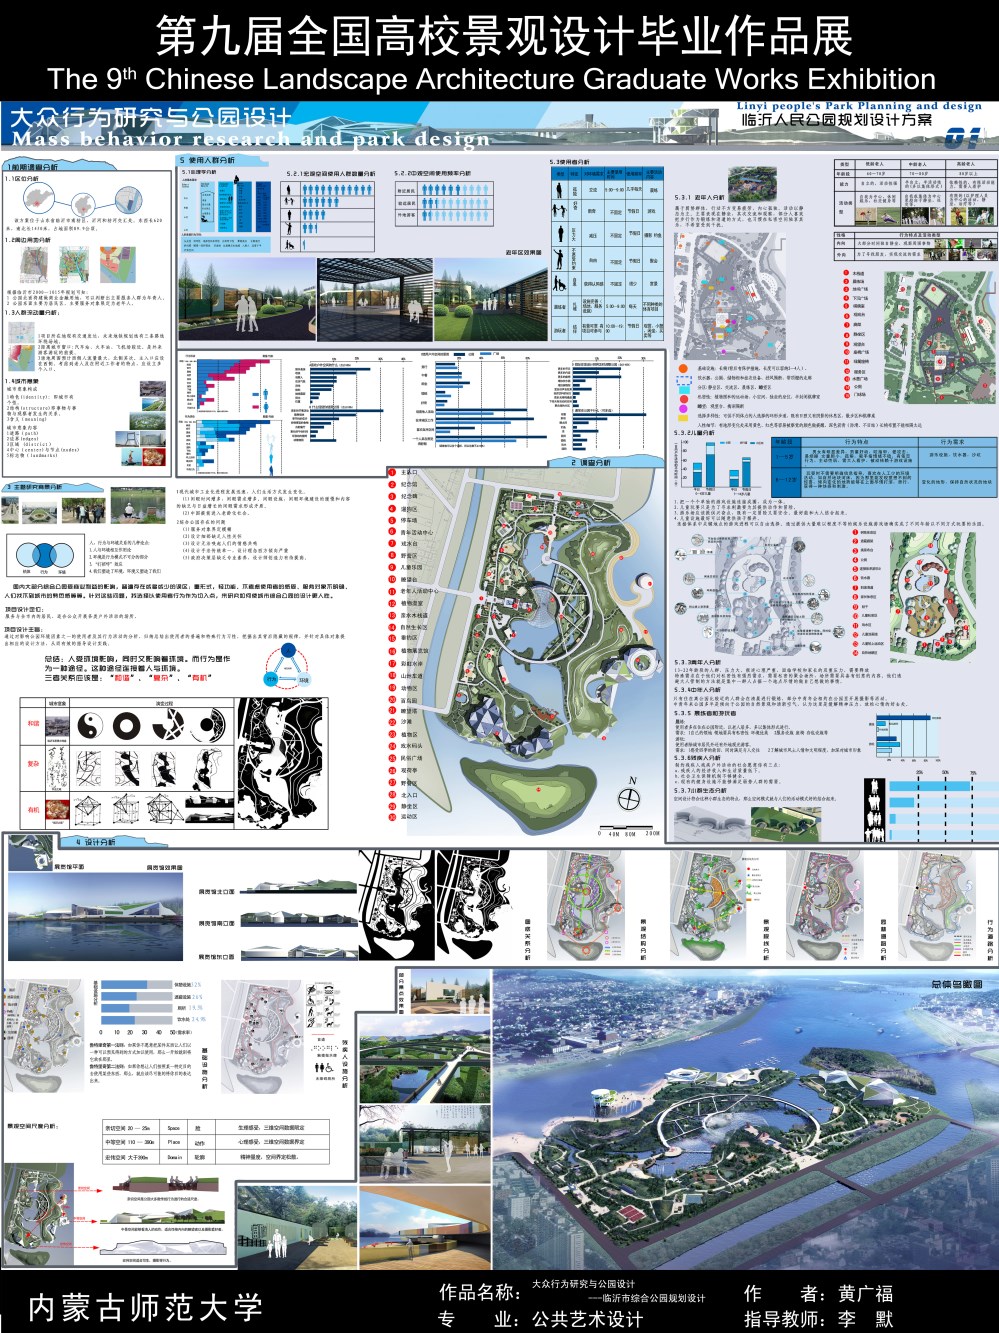 大众行为研究与公园设计---临沂市综合公园规划设计-1